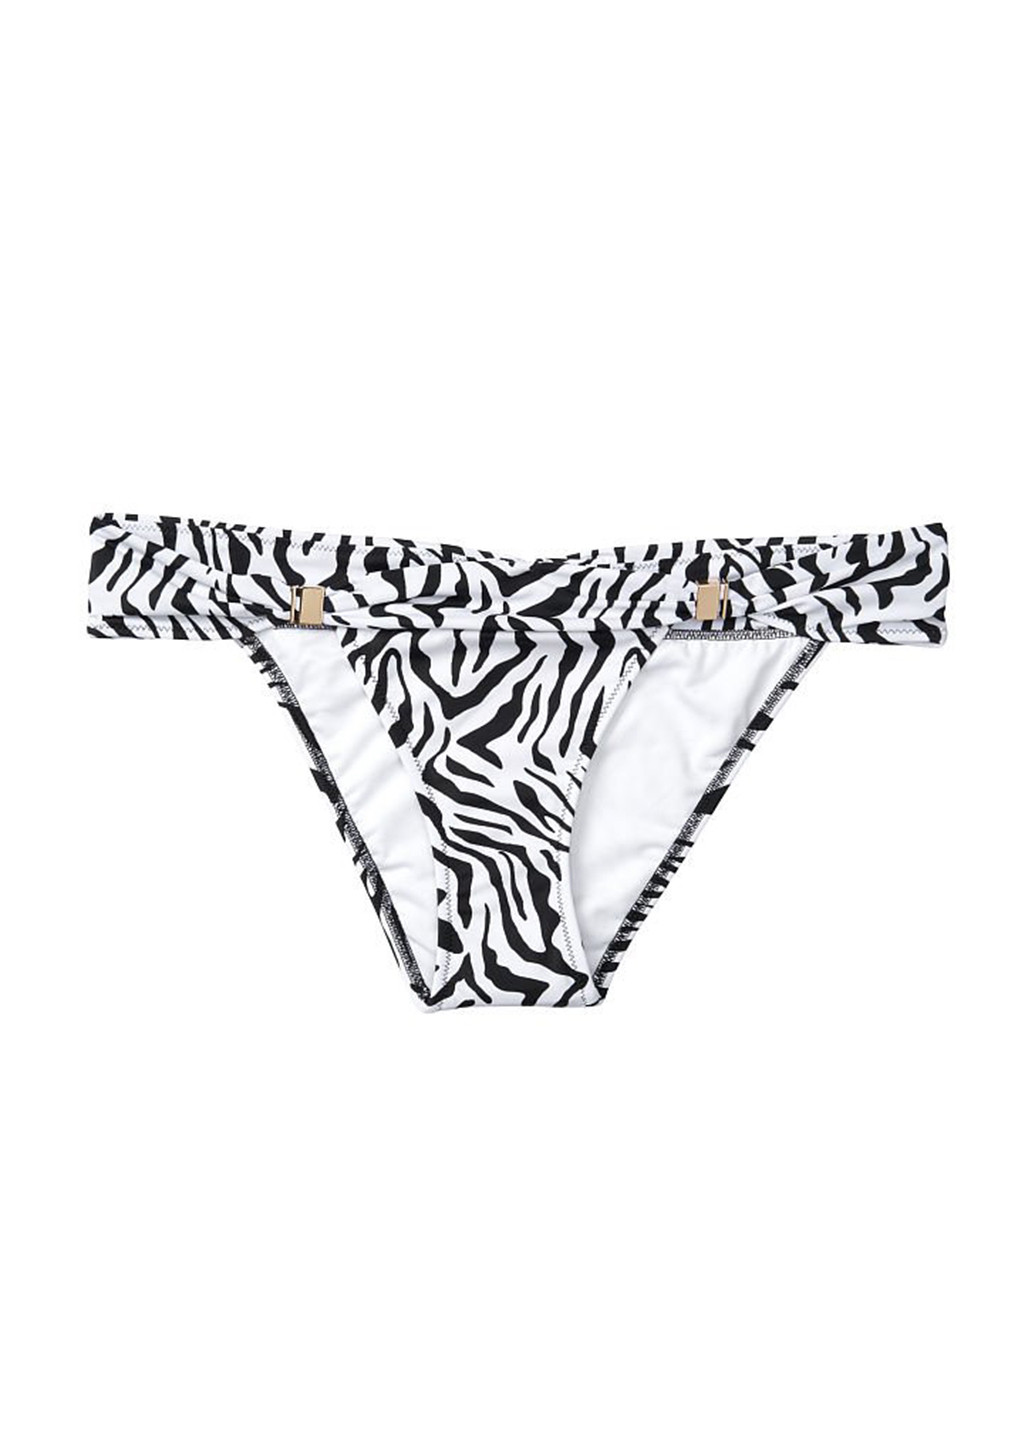 Черно-белый летний купальник (лиф, трусы) раздельный, бандо Victoria's Secret